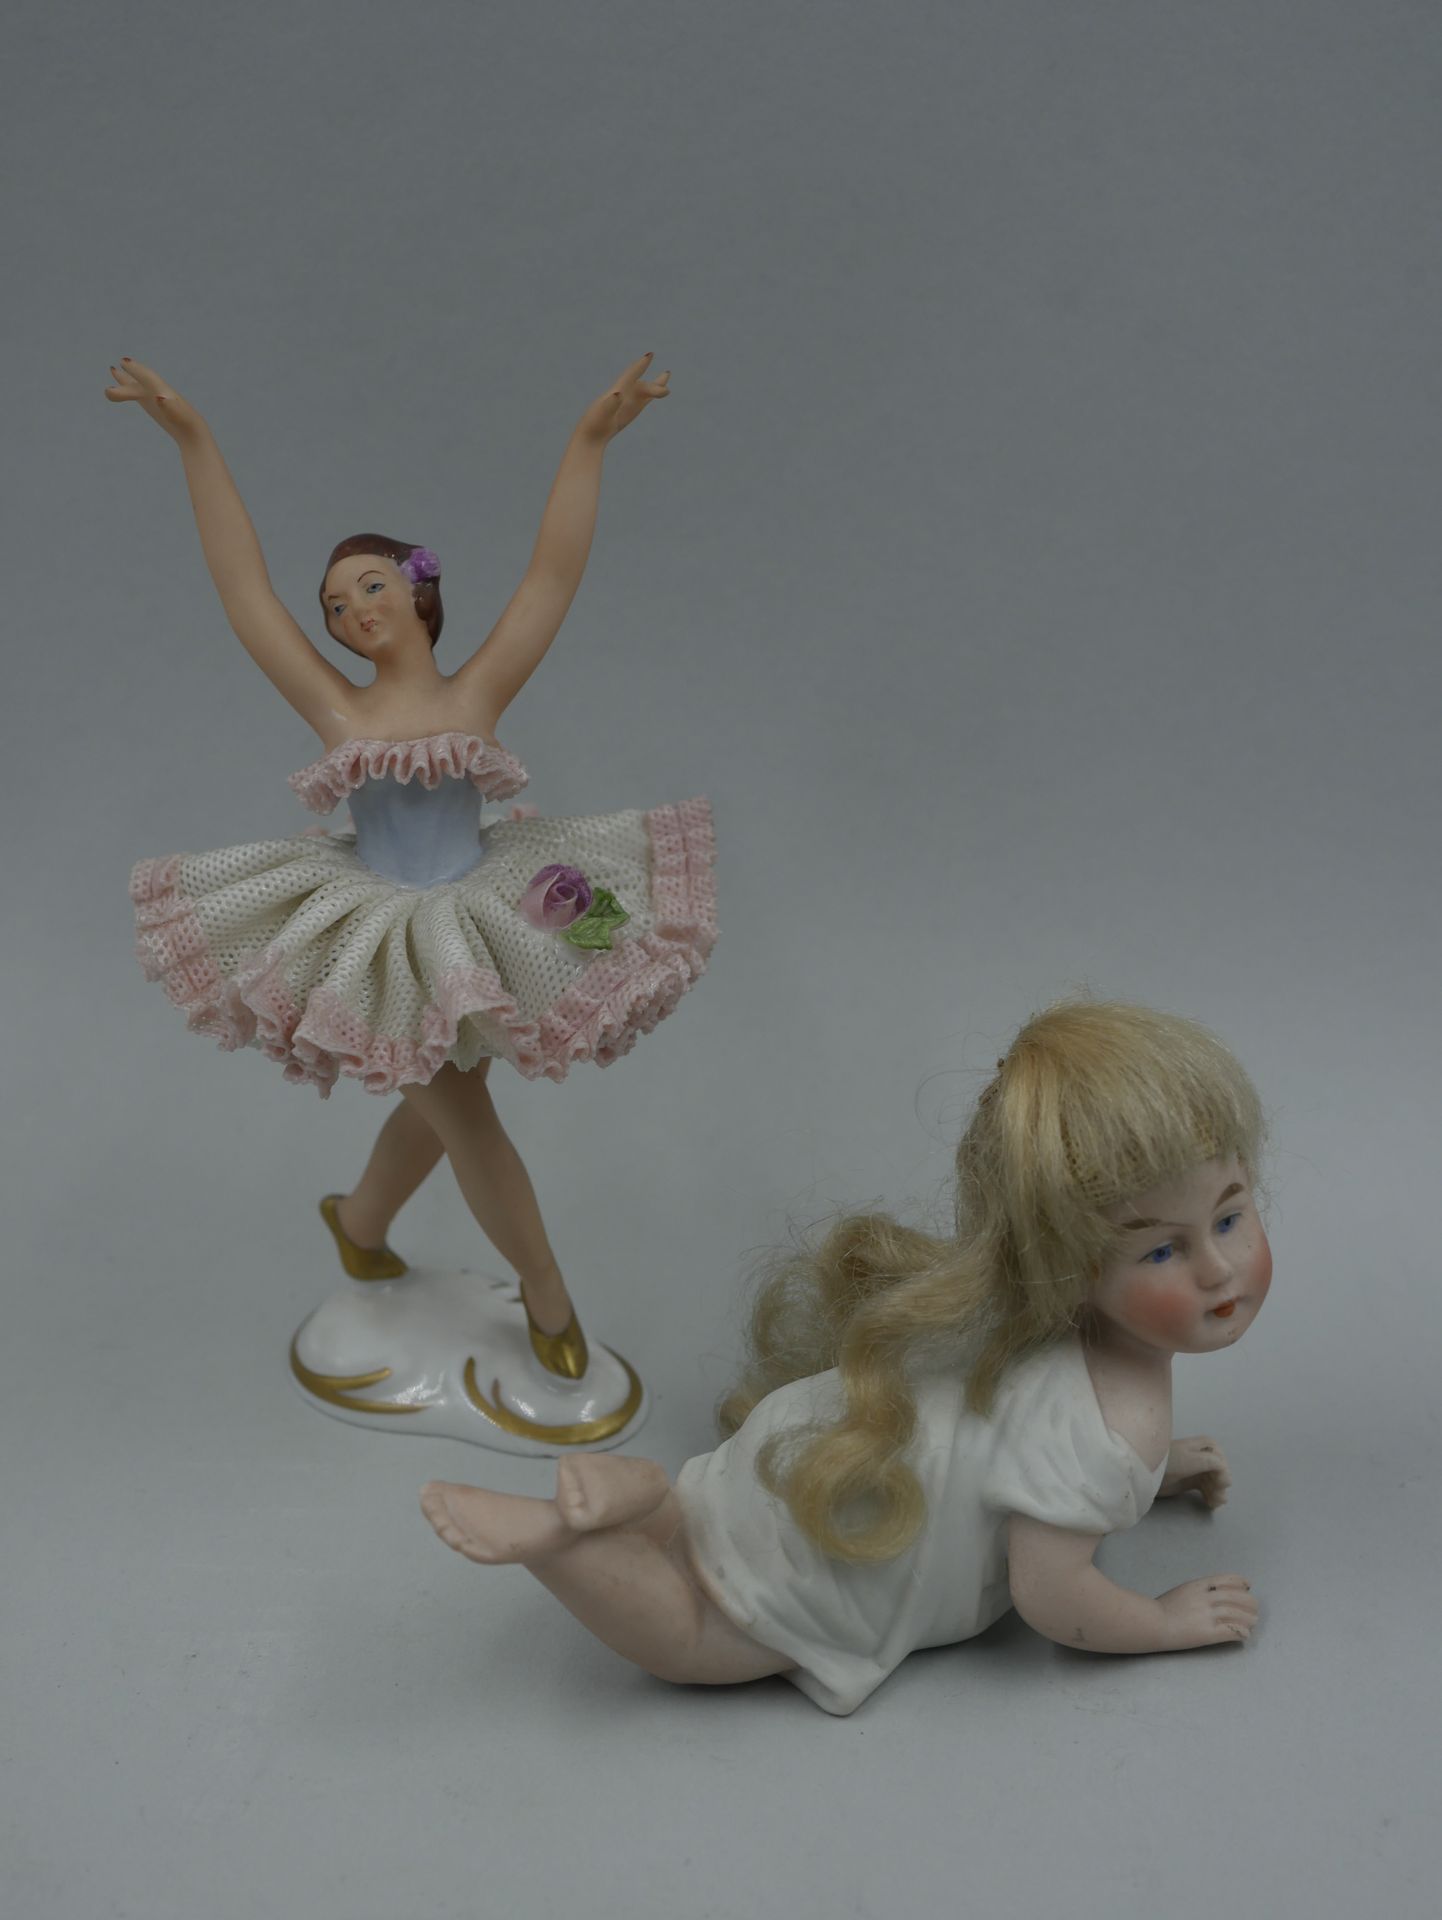 Null 小瓷器舞者和微型瓷器娃娃。19世纪末-20世纪初。(小事故)